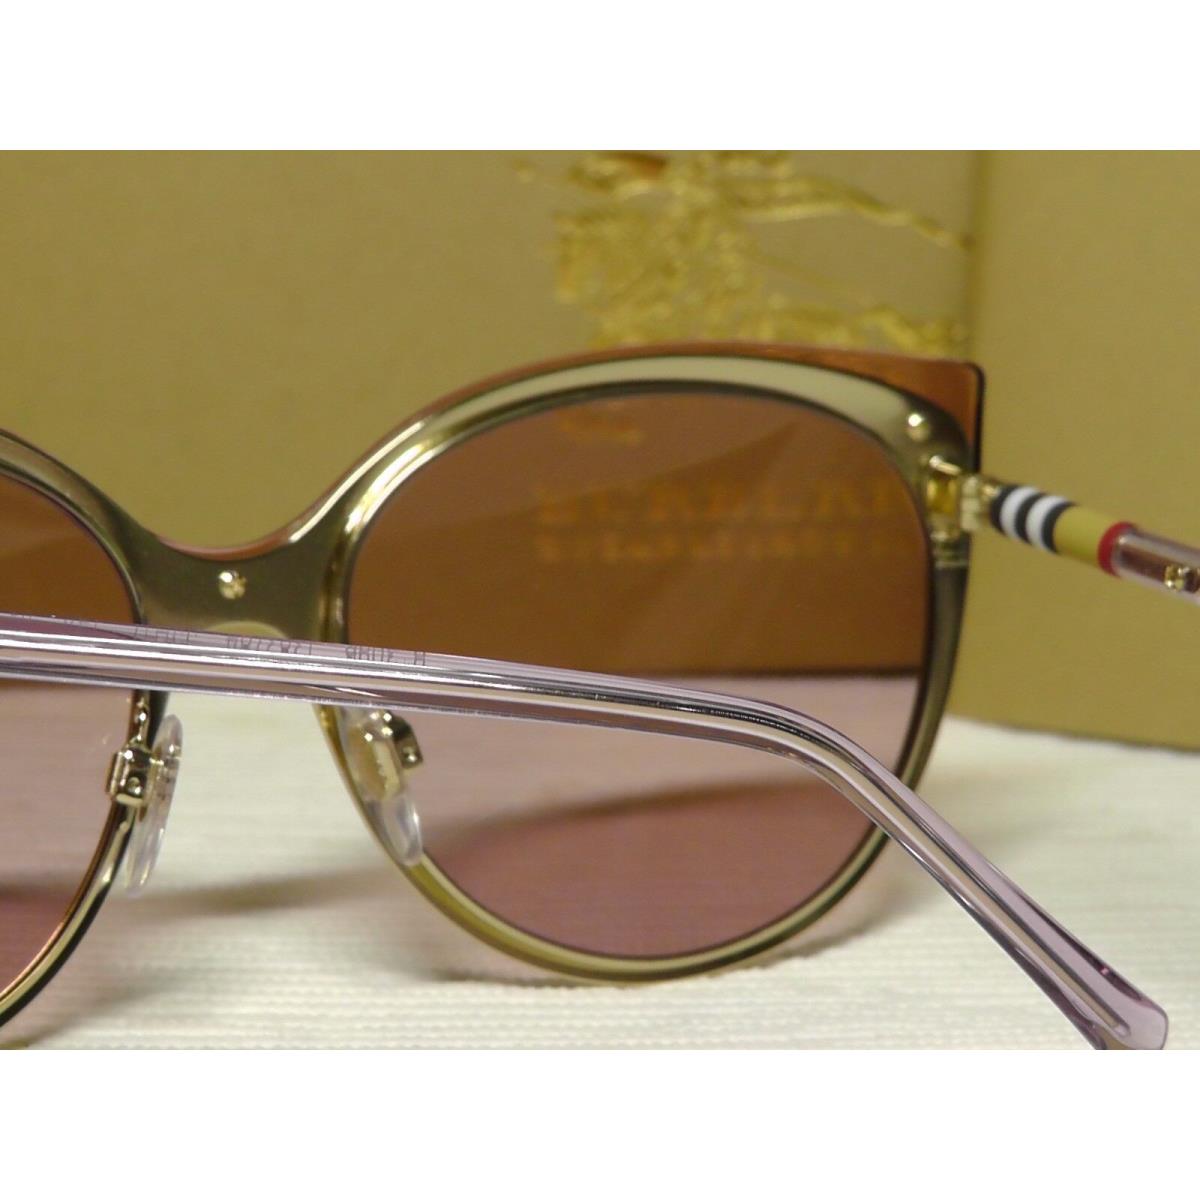 Burberry sunglasses  - Beige/Brushed/ Gold-tone Frame, Light Pink Lens 9